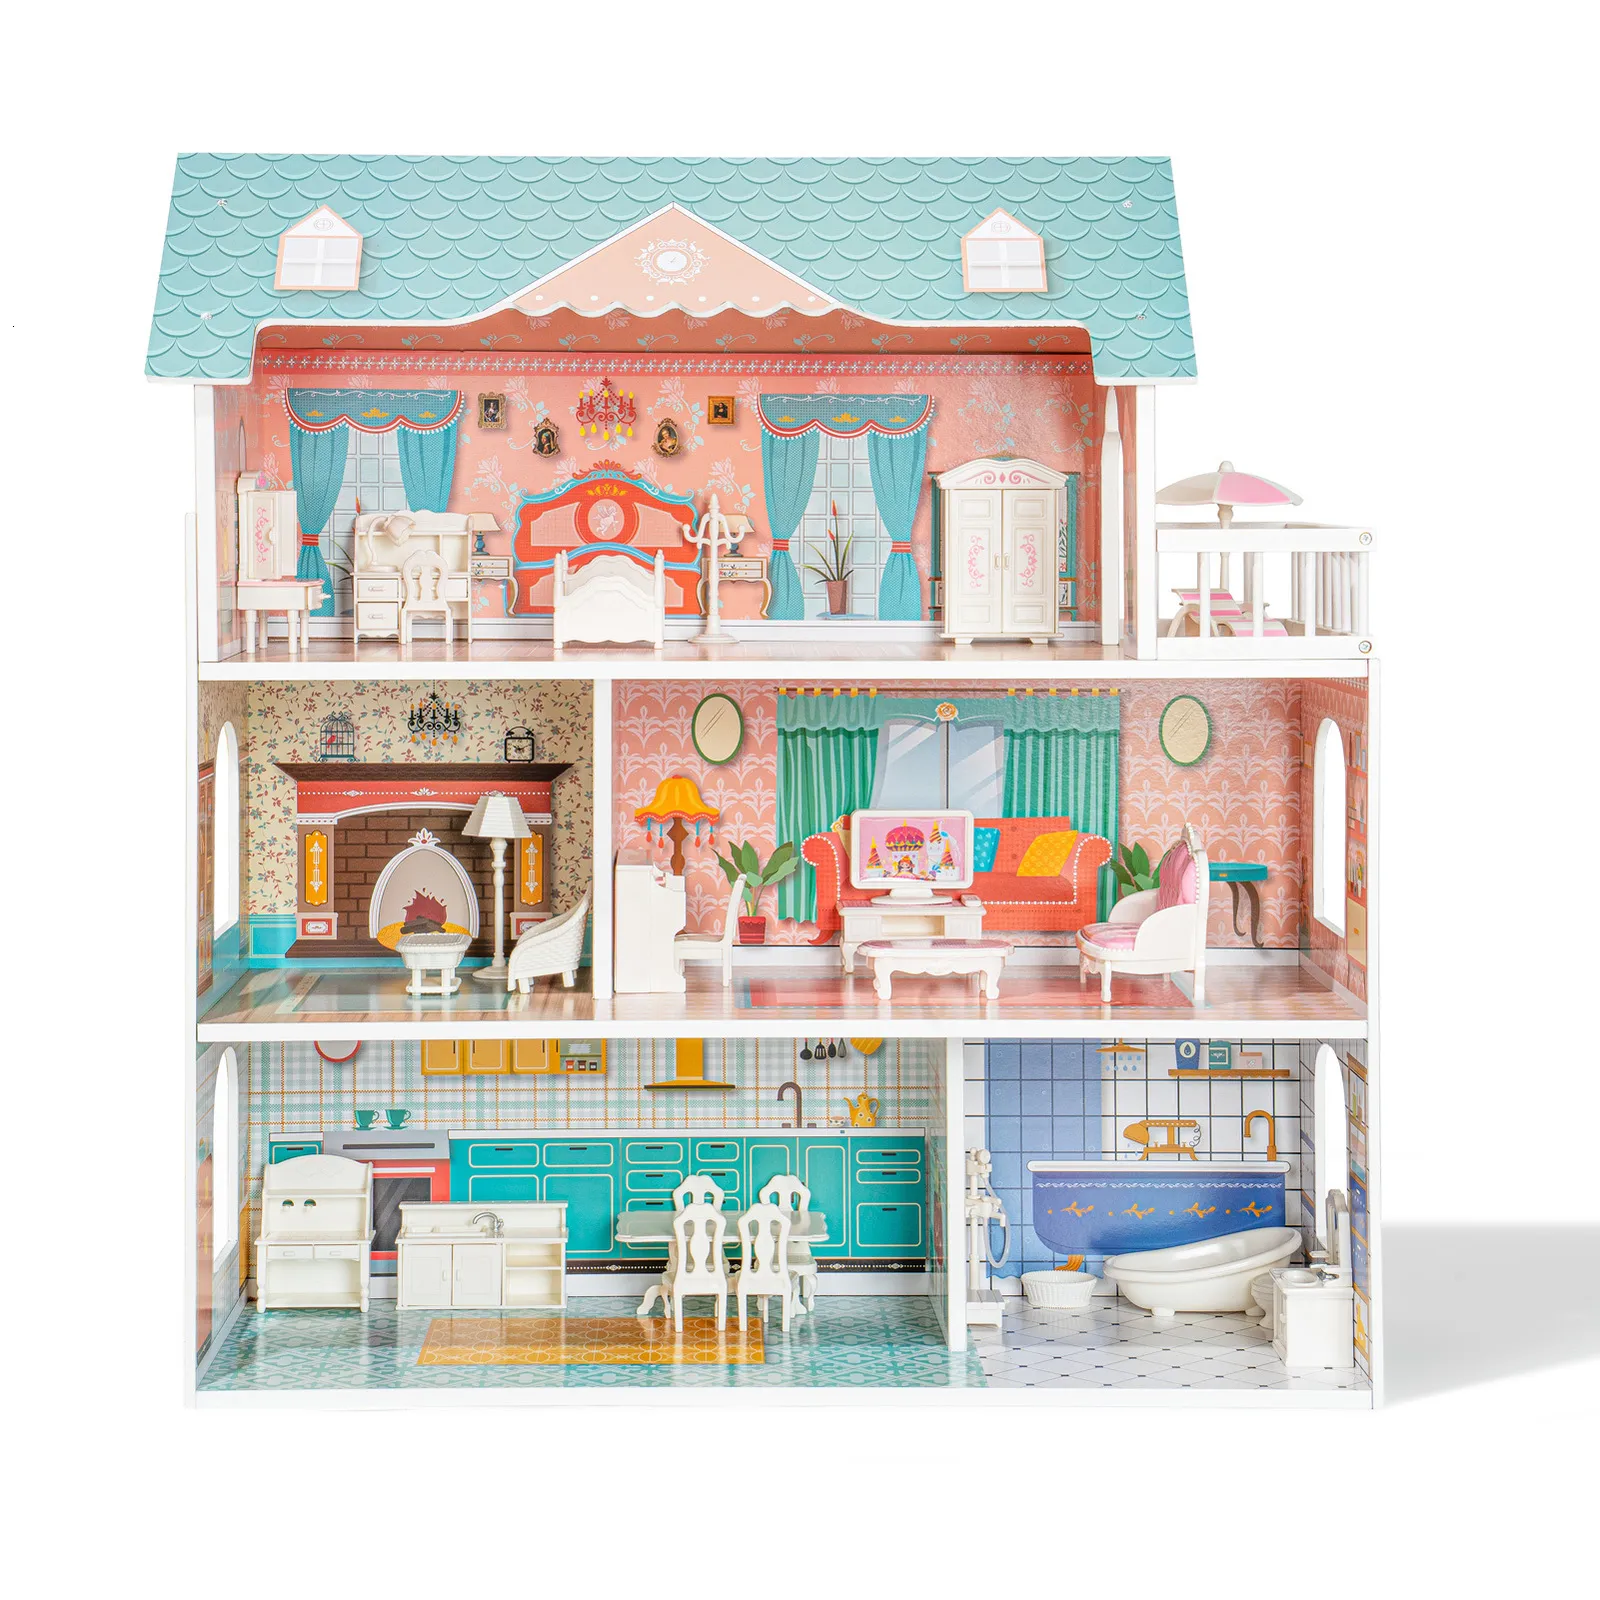 Bonecas Robud Doll House Casa de bonecas de madeira para crianças 3 4 5 6 anos de idade 28pcs móveis plástico presentes de aniversário toddle 230922